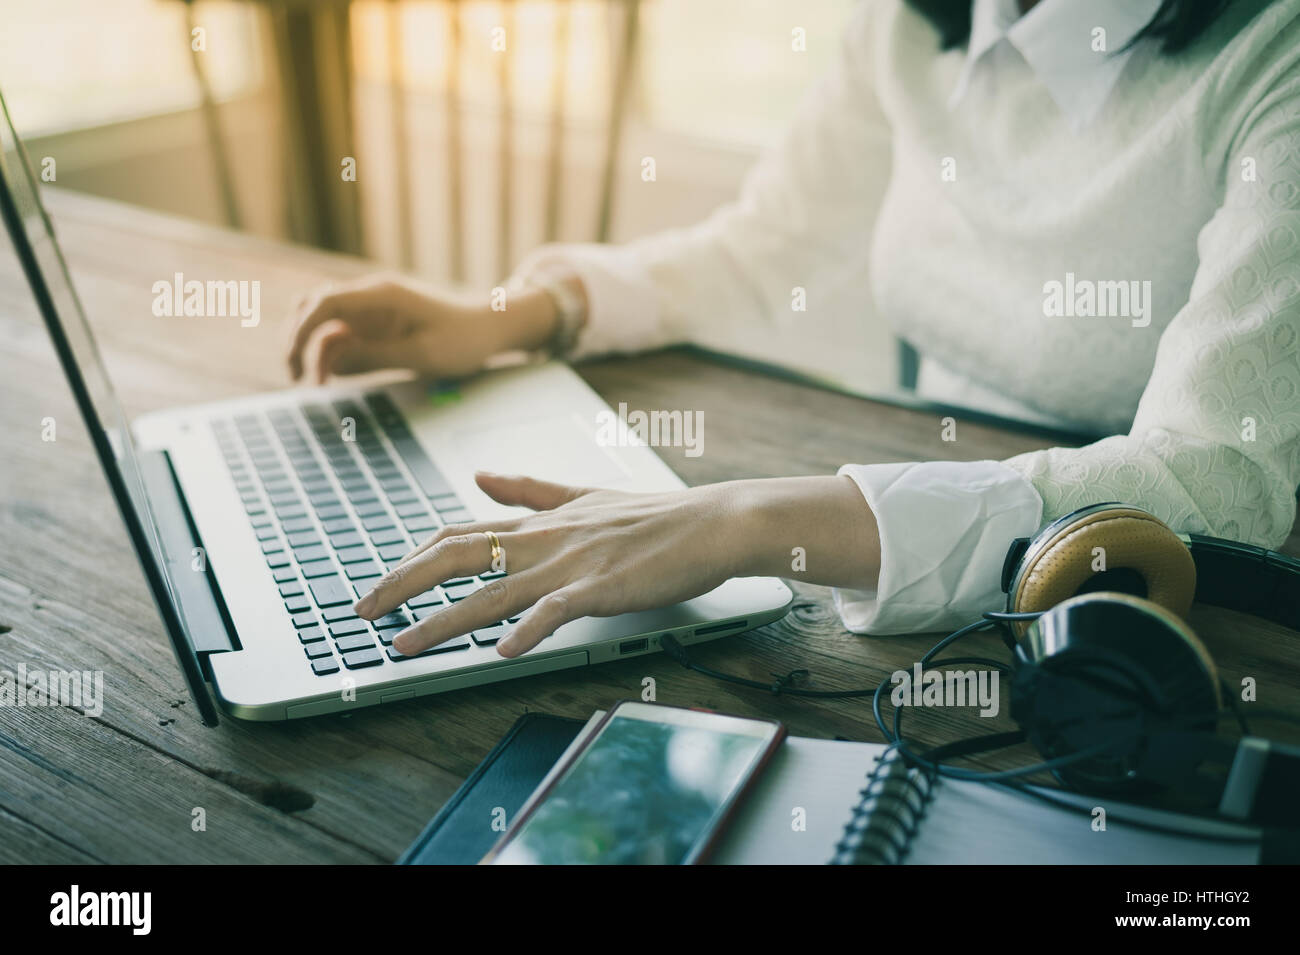 Donna mani digitando su laptop tastiera del computer mentre si lavora online con internet. Elaborato con vintage effetto filtro Foto Stock